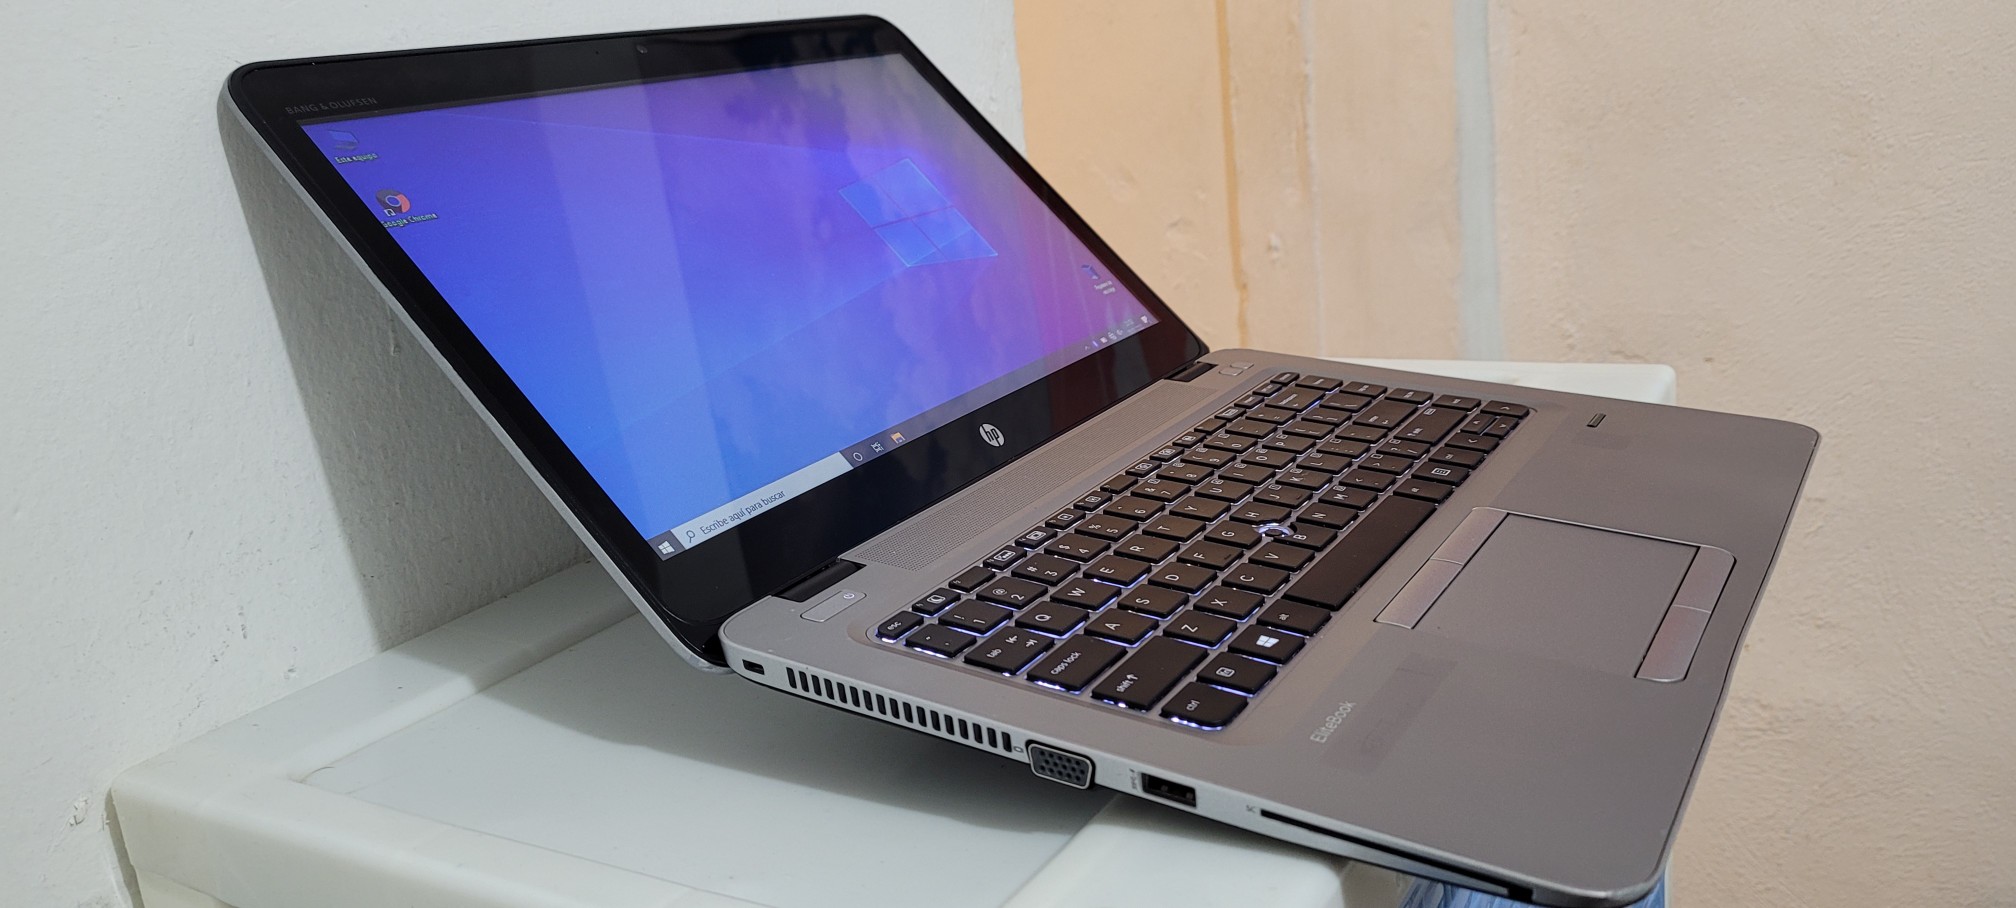 computadoras y laptops - Laptop hp Touch 14 Pulg Core i5 7ma Gen Ram 8gb ddr4 Dos Disco 128gb Y 320gb 1